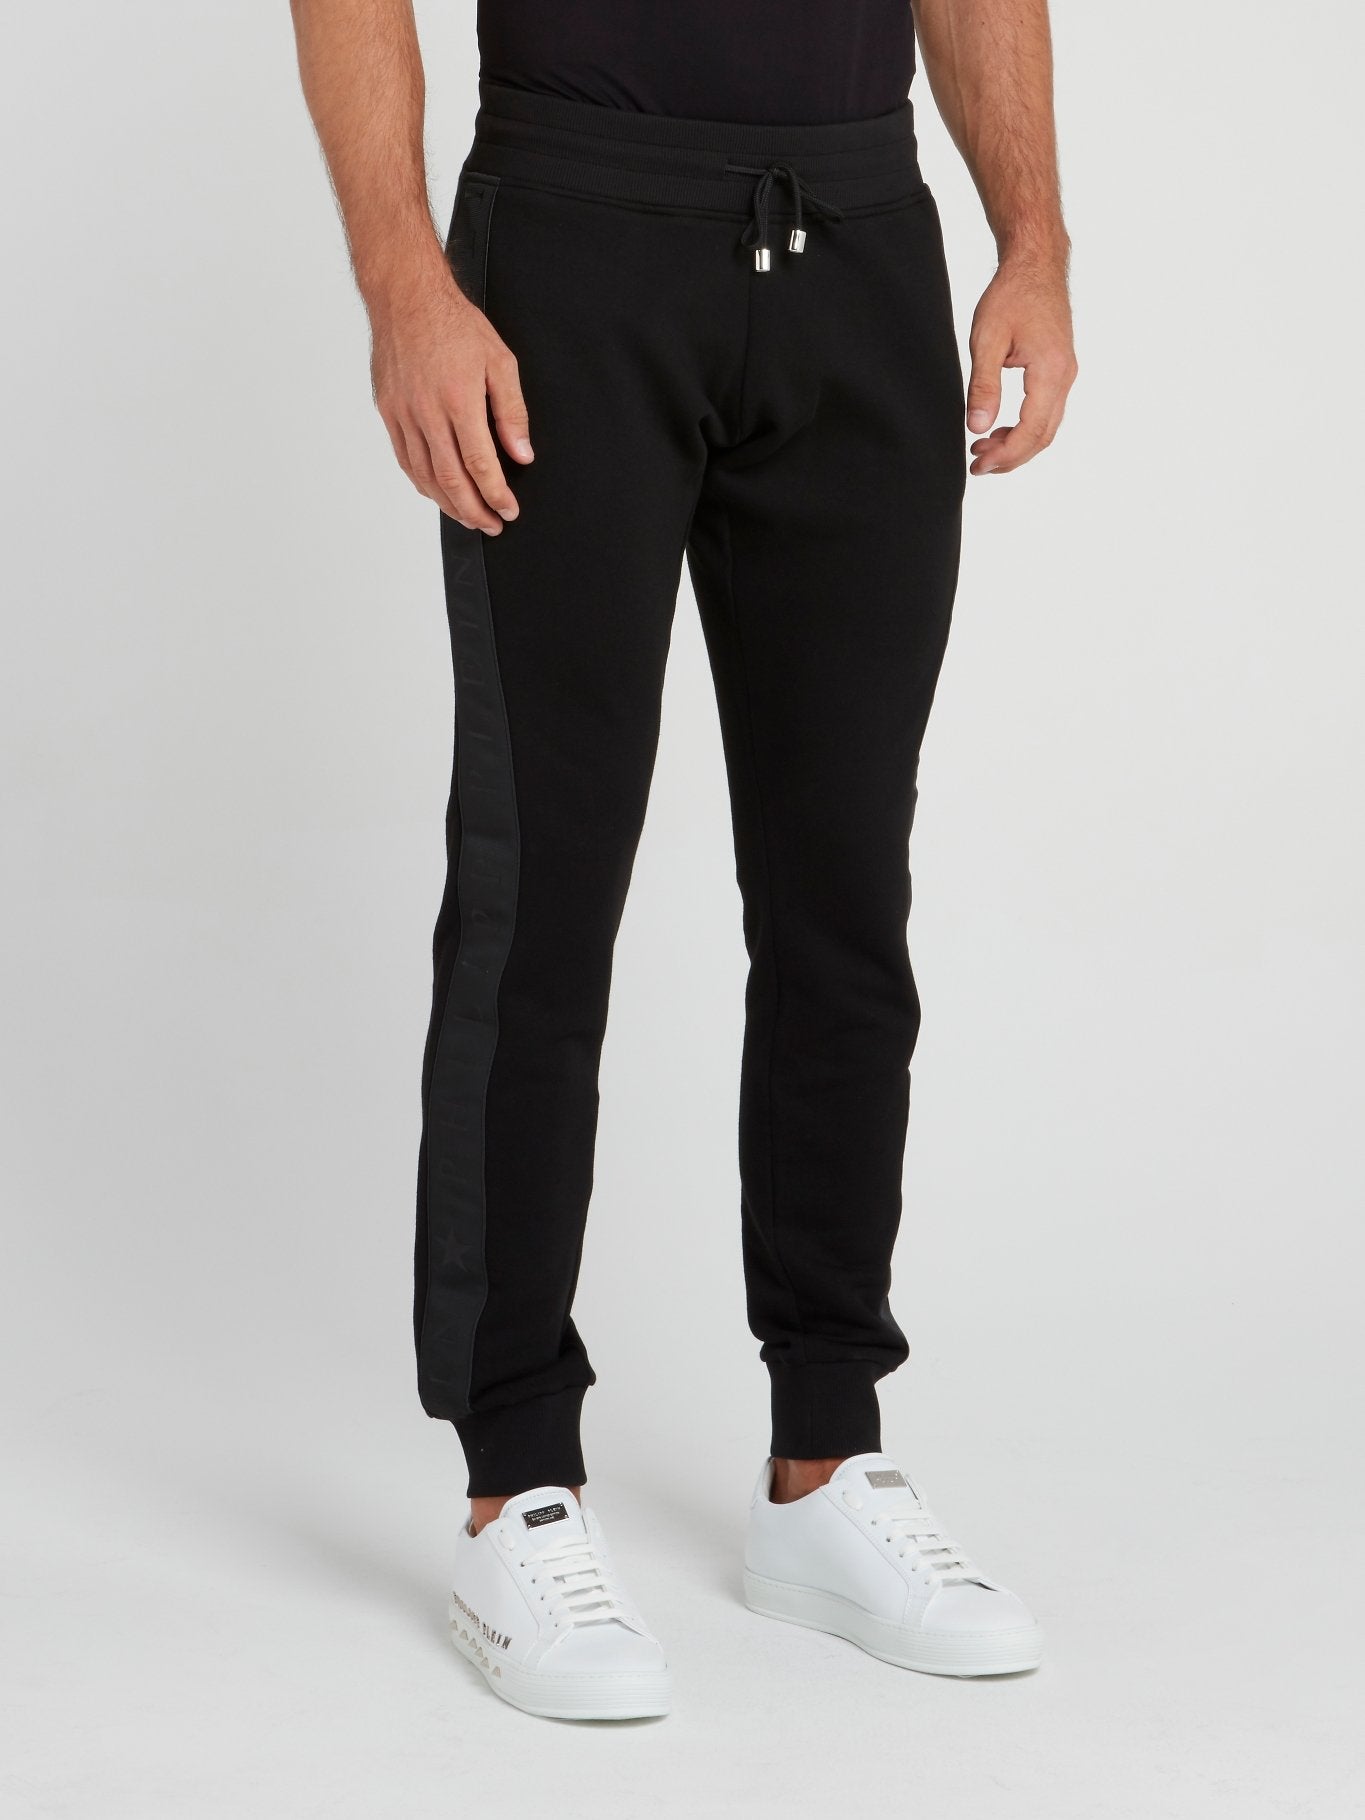 Черные спортивные брюки с лампасами и логотипом